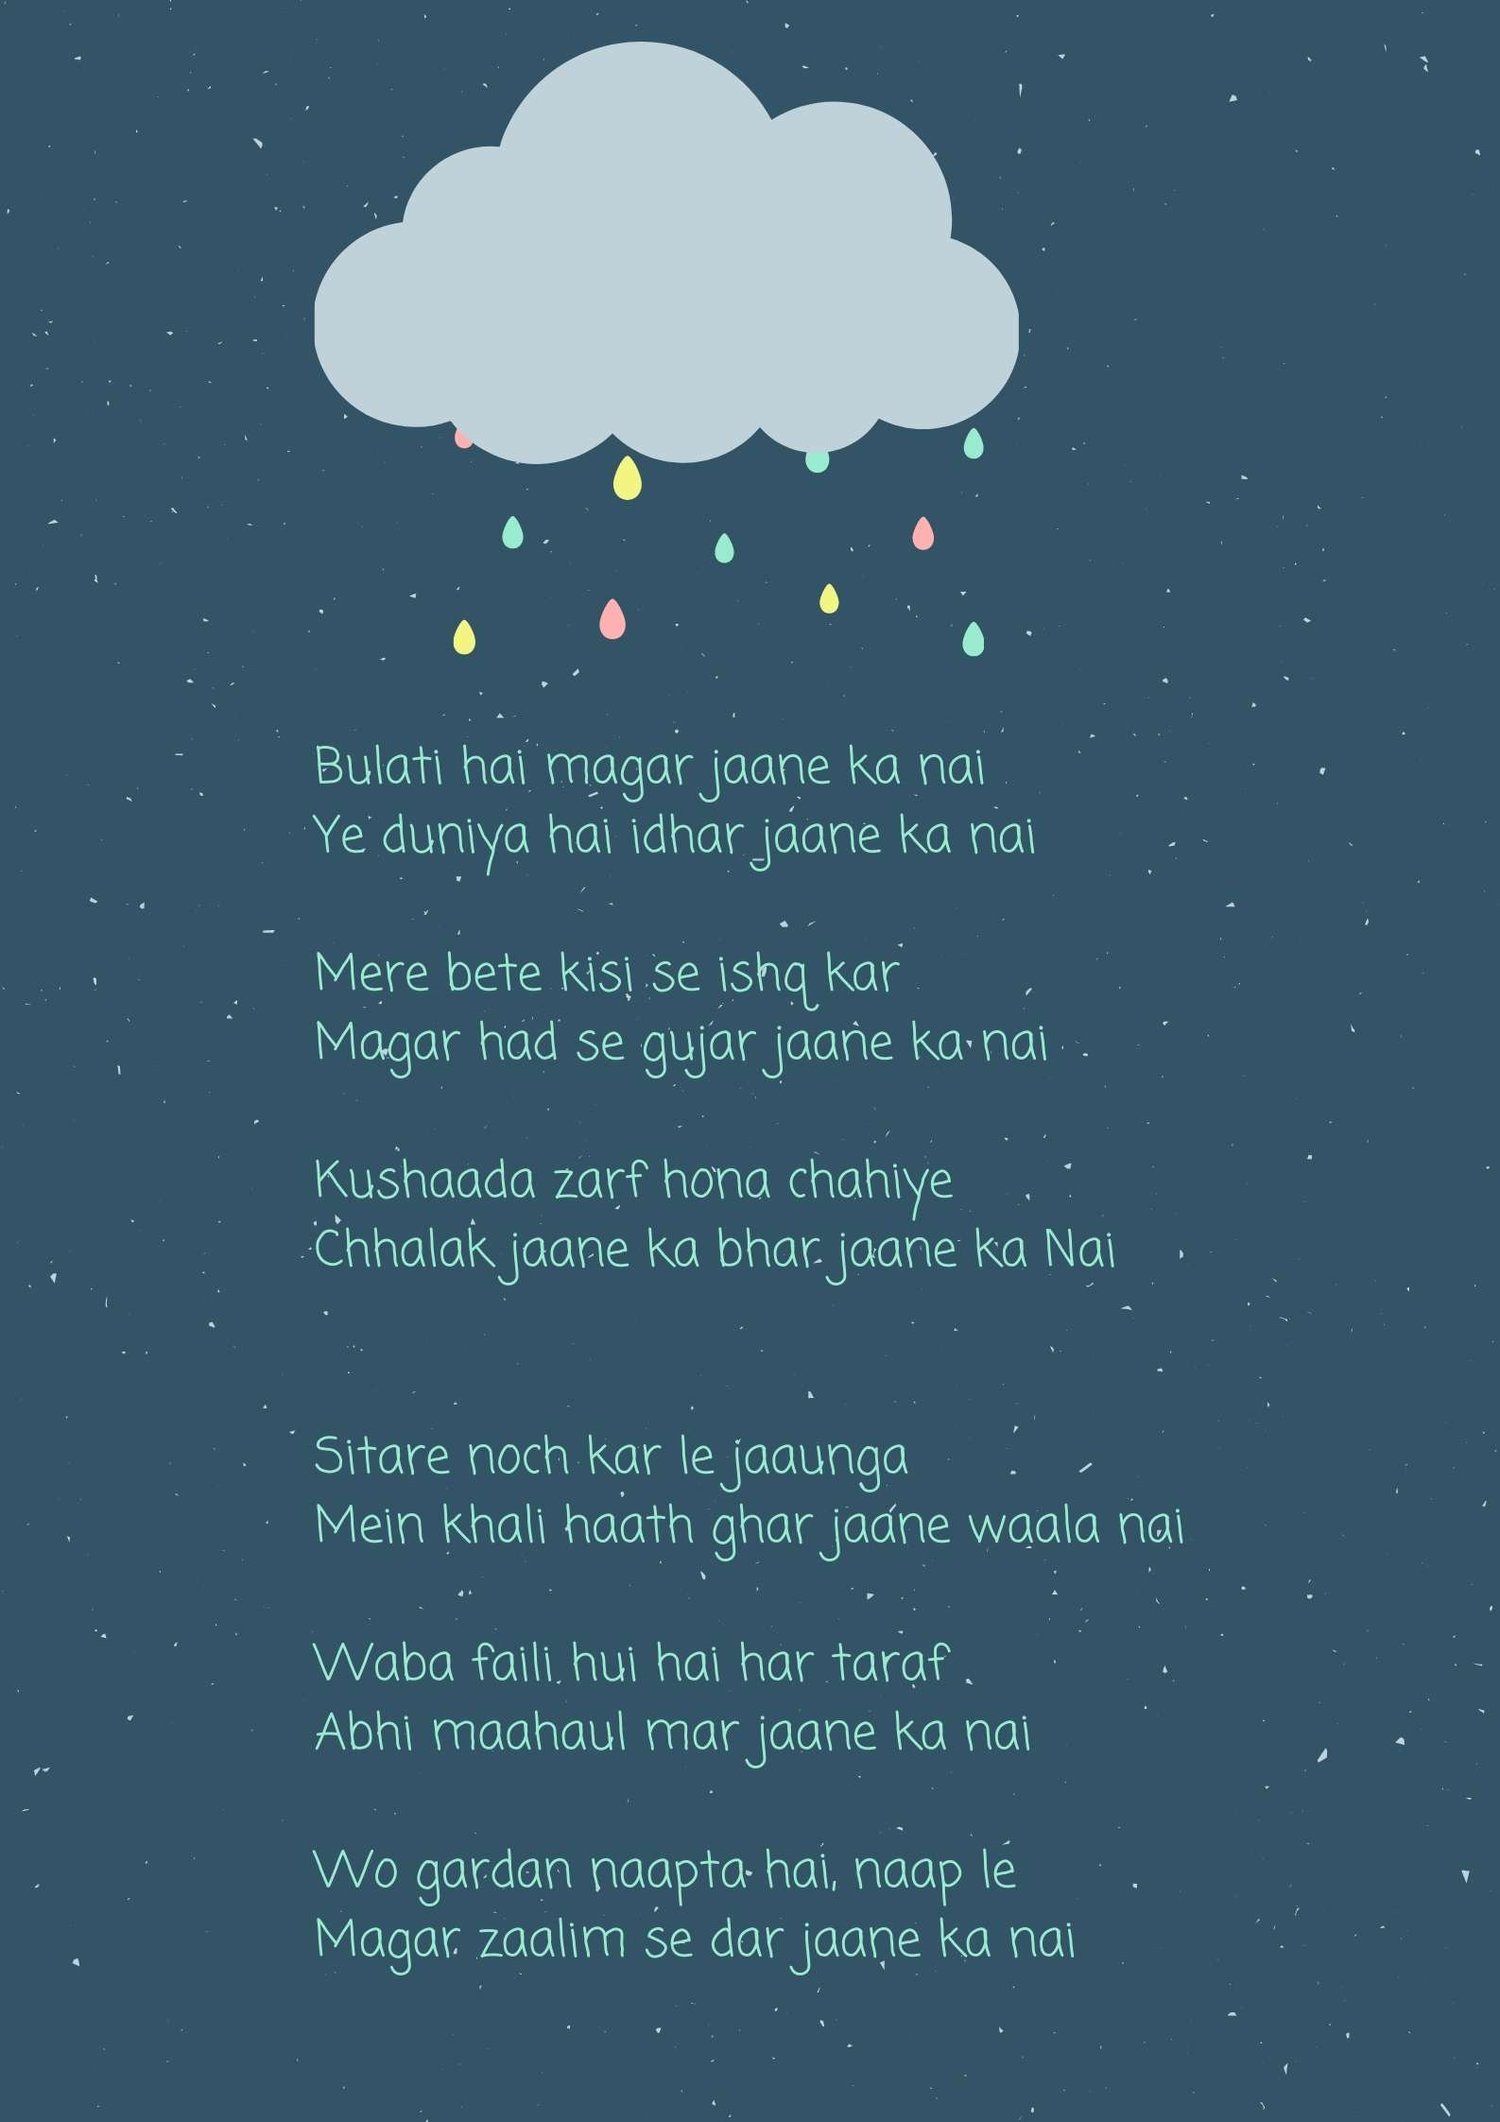 bulati hai magar jaane ka nahi lyrics image downnload